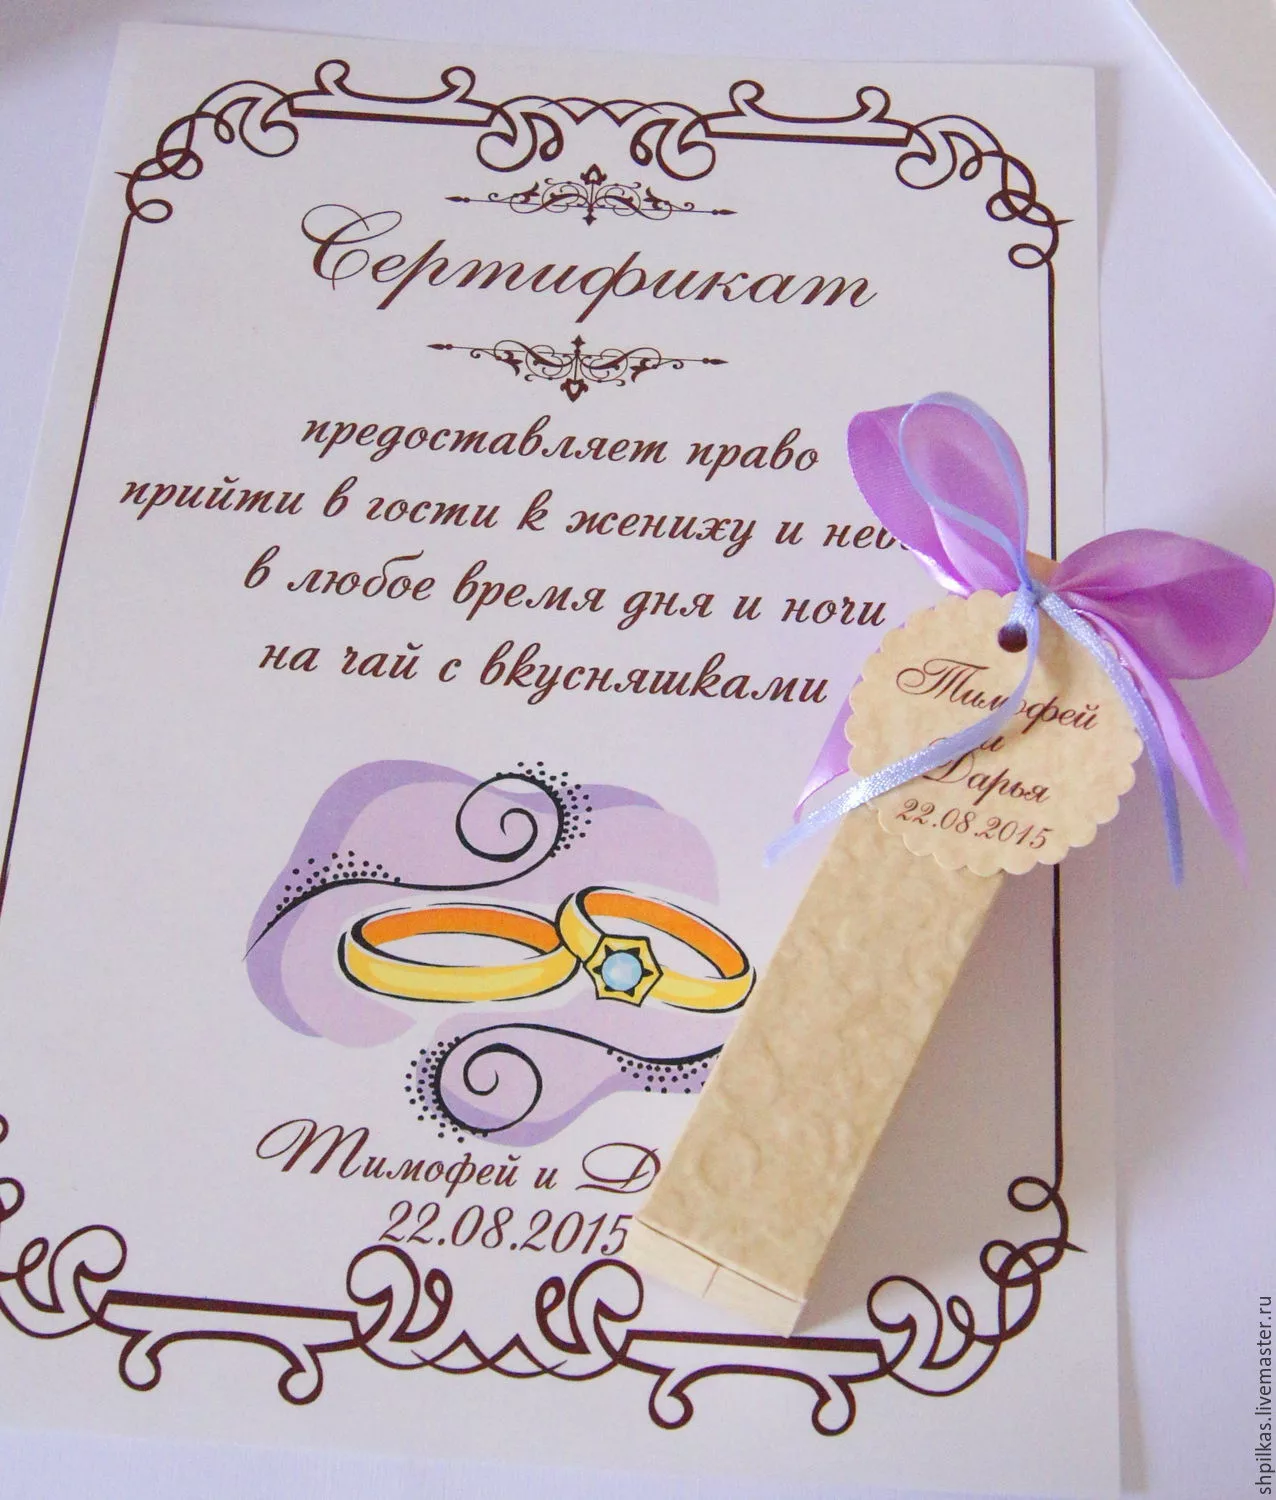 Фото Стихи и слова благодарности на свадьбе от жениха #69